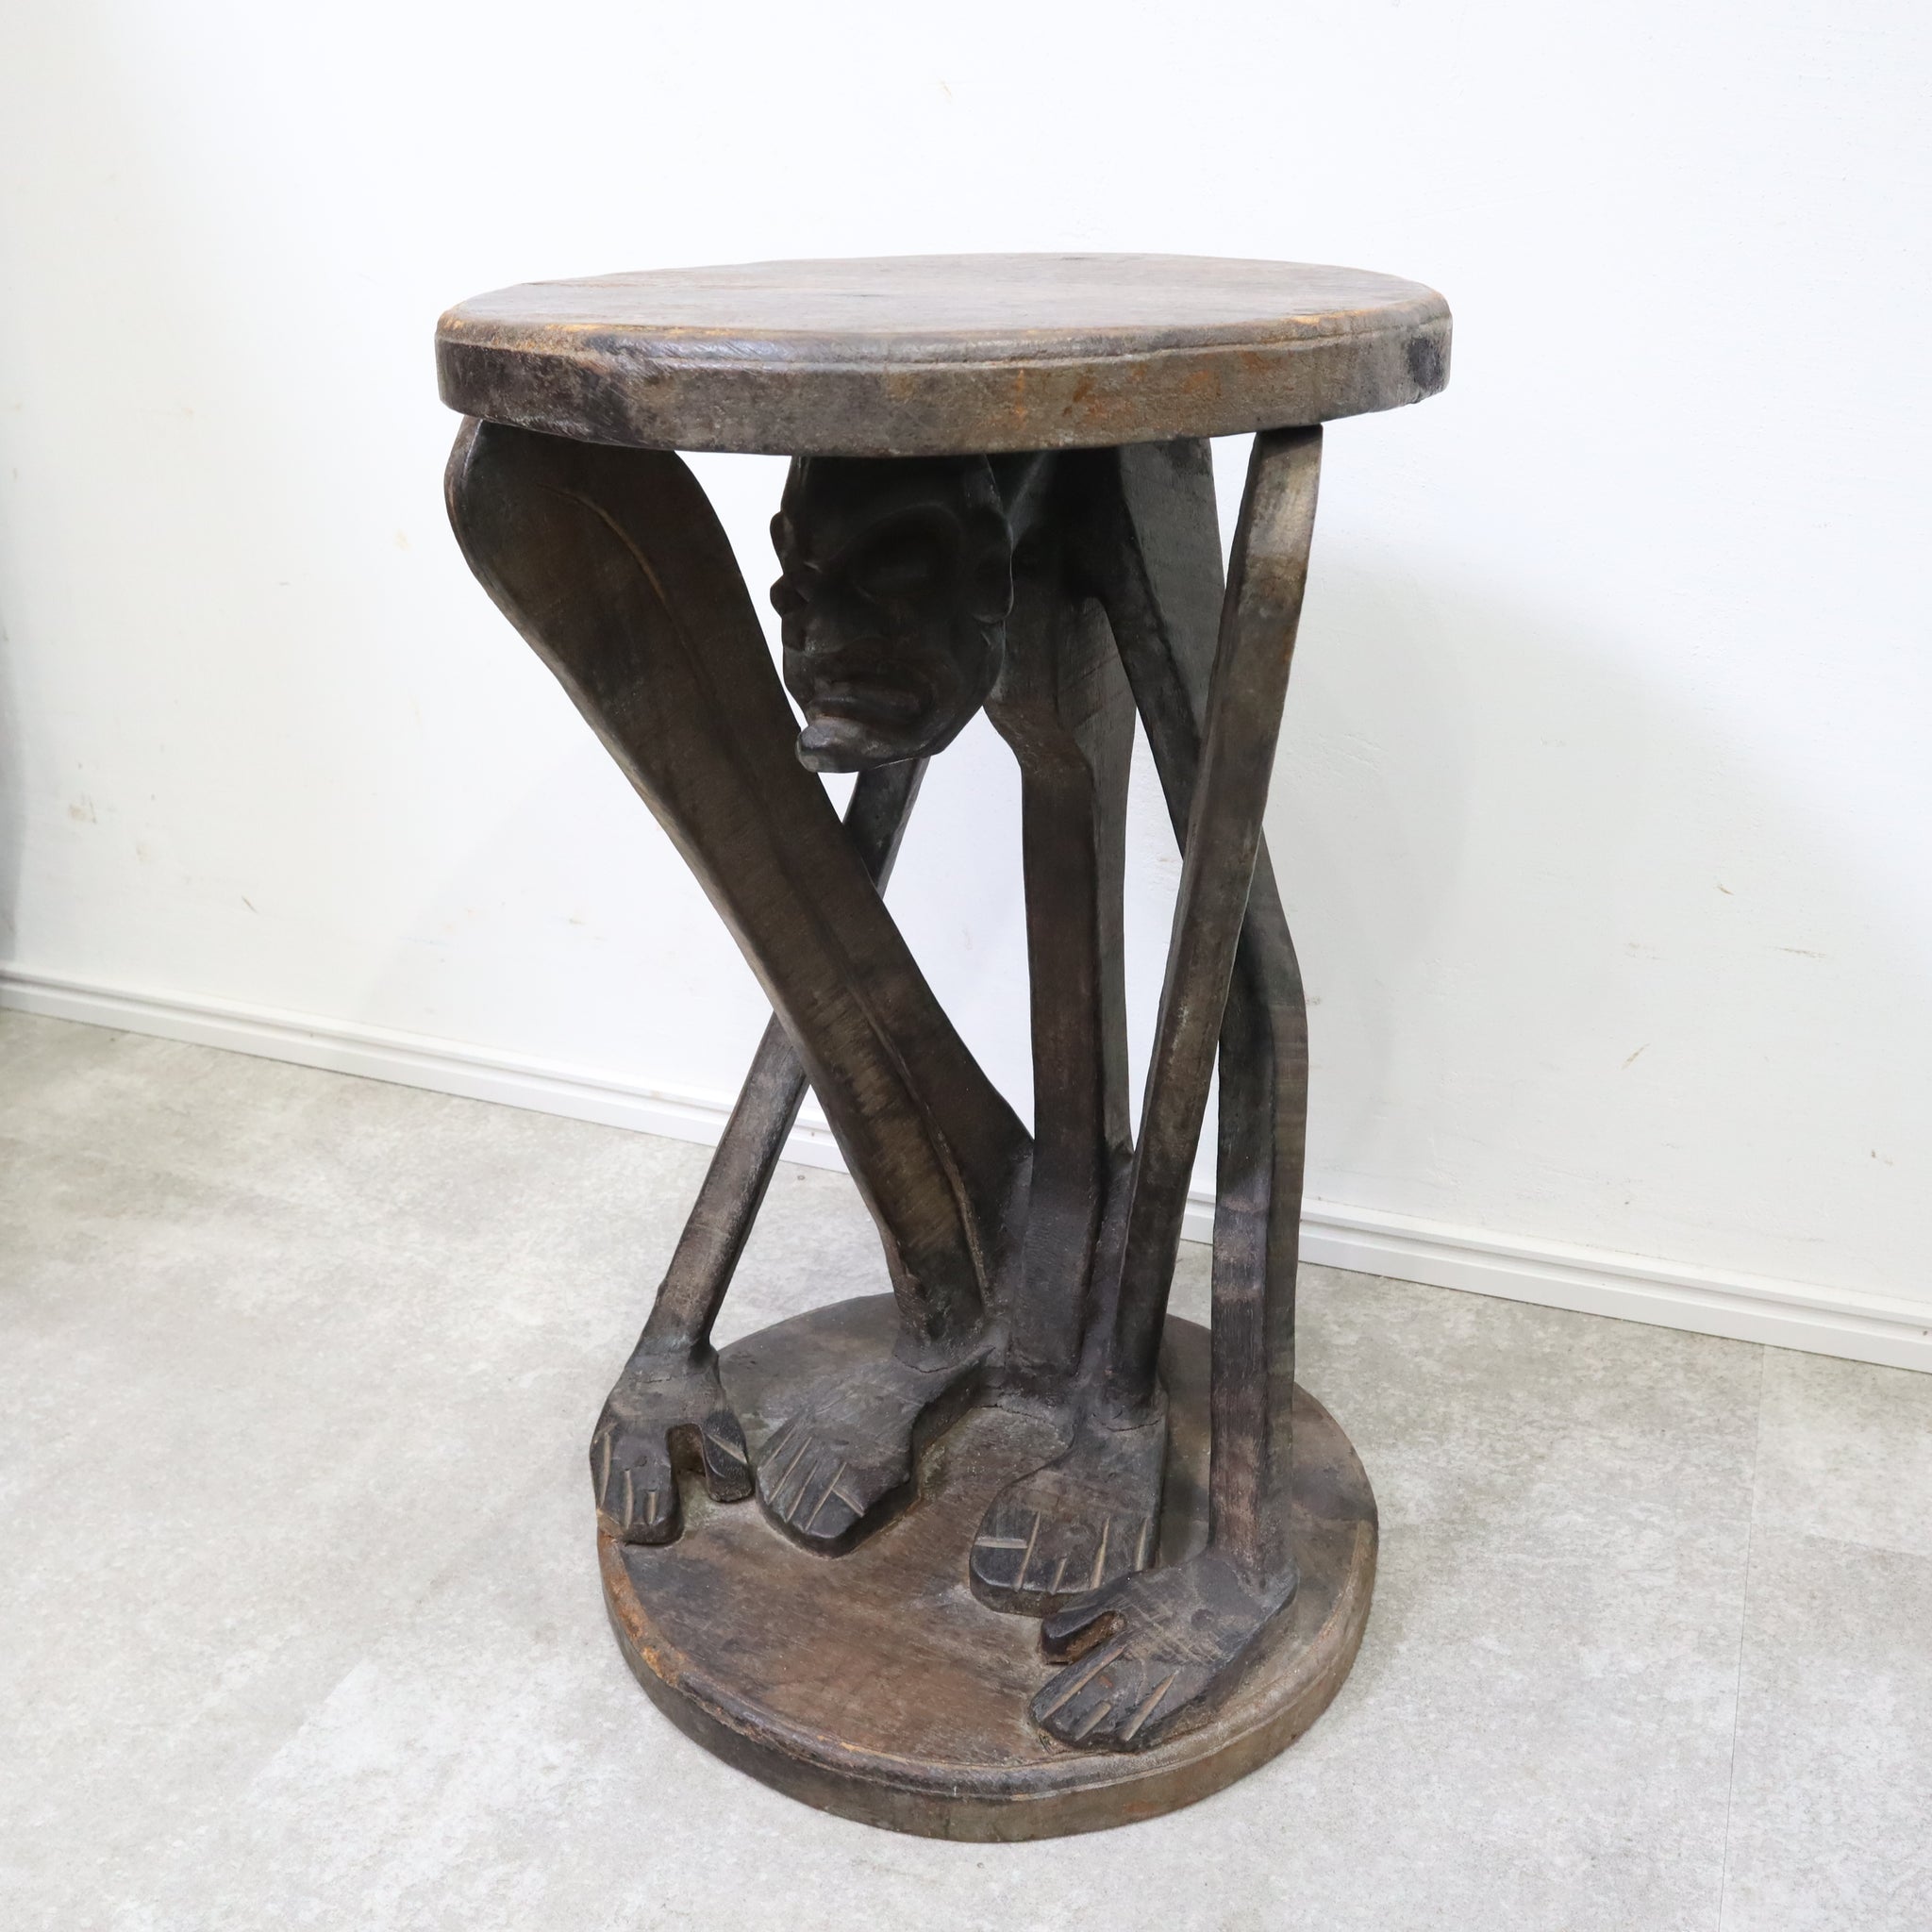 原人ルックの木彫りサイドテーブル